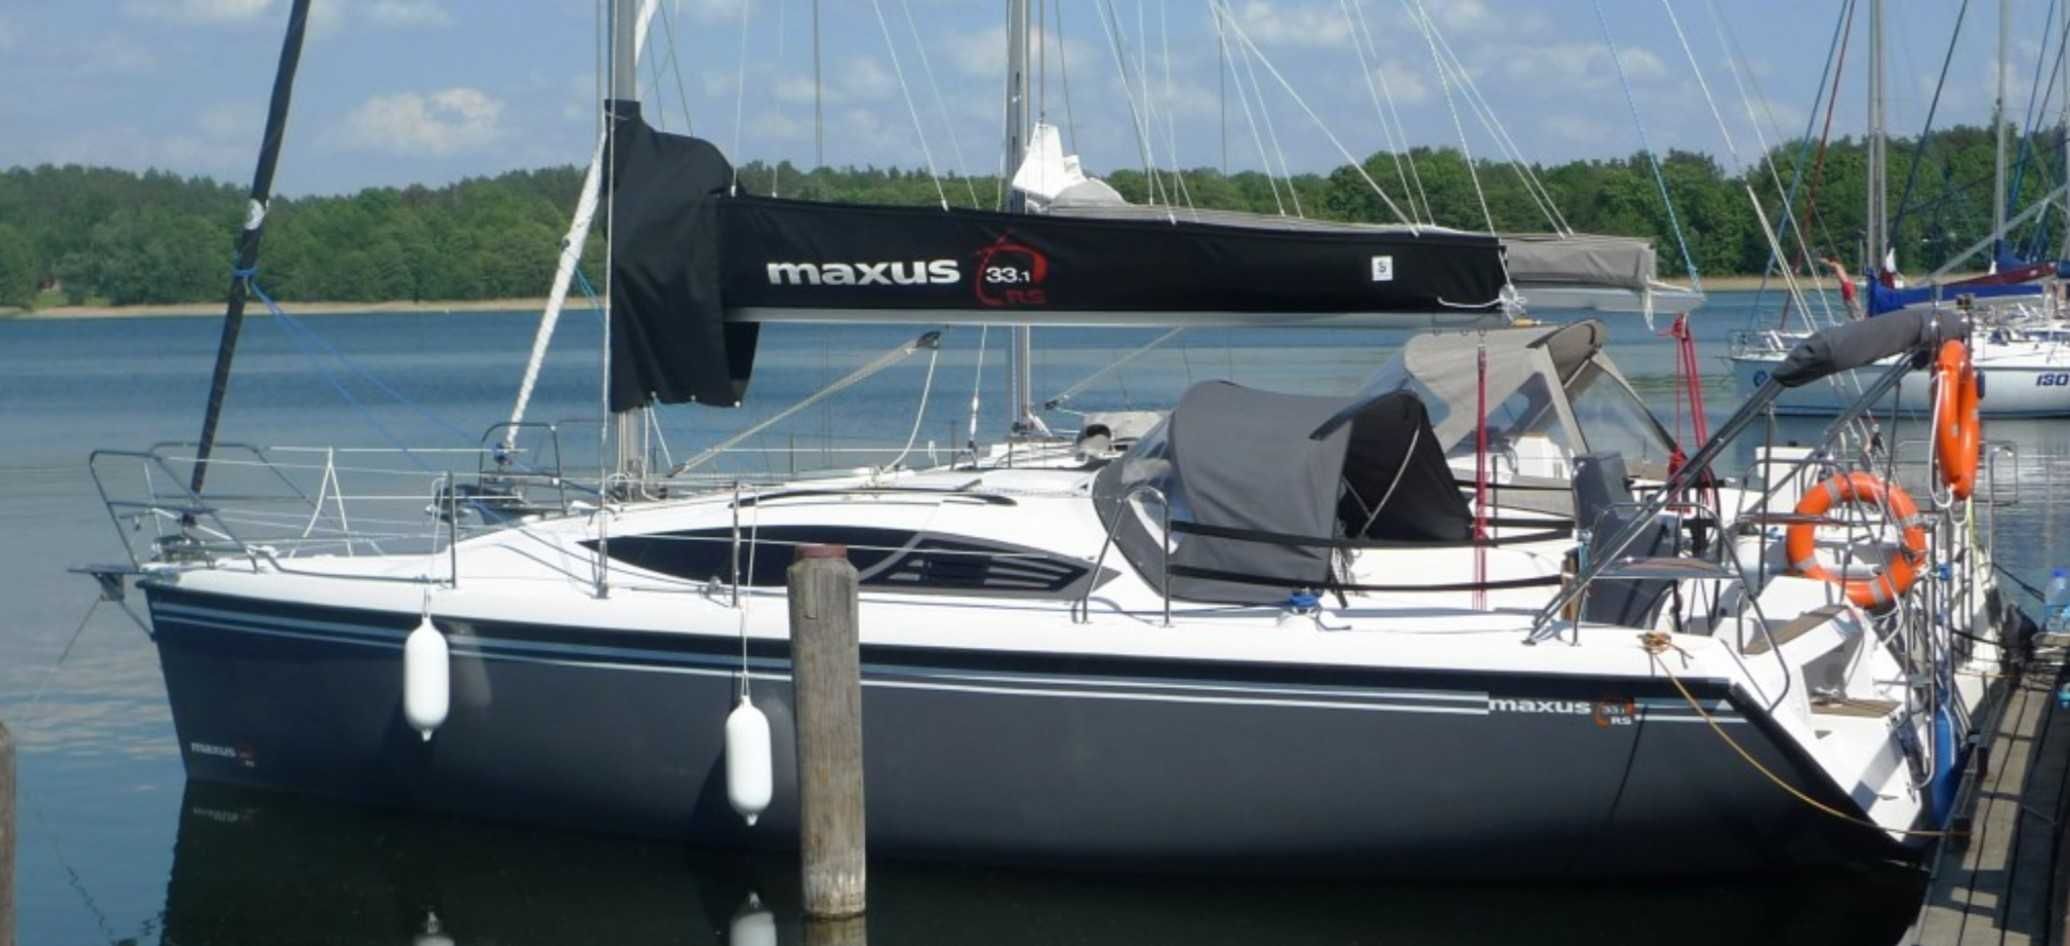 Sprzedam Jacht maxus 33.1 RS